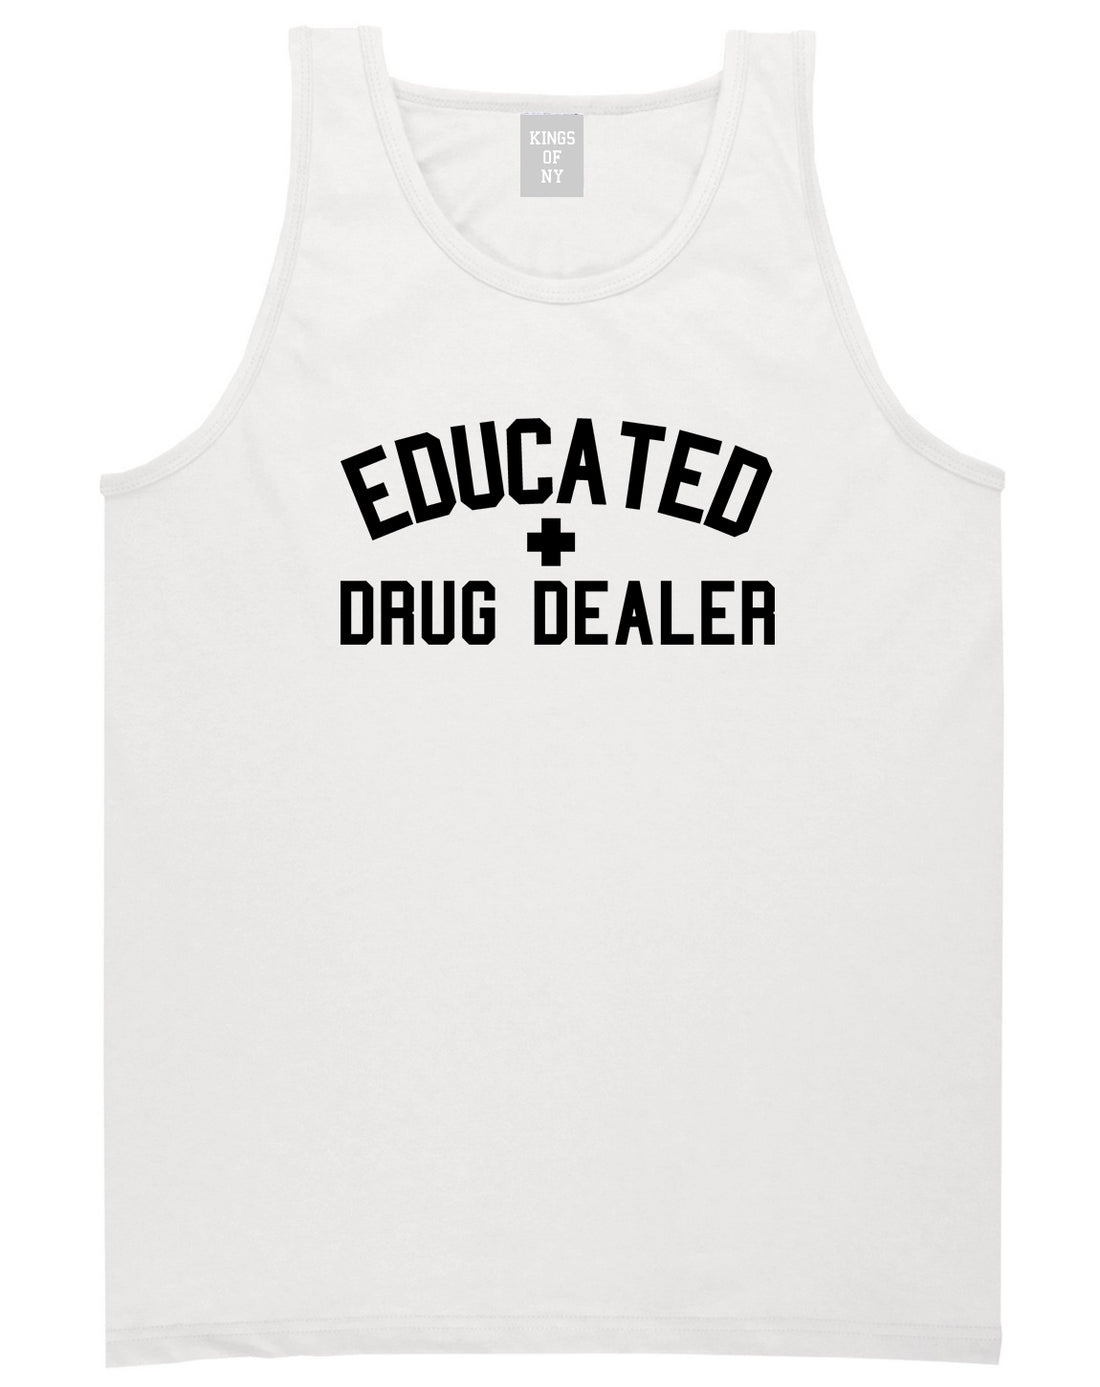 Educated Drug Dealer Mens Tank Top Shirt White